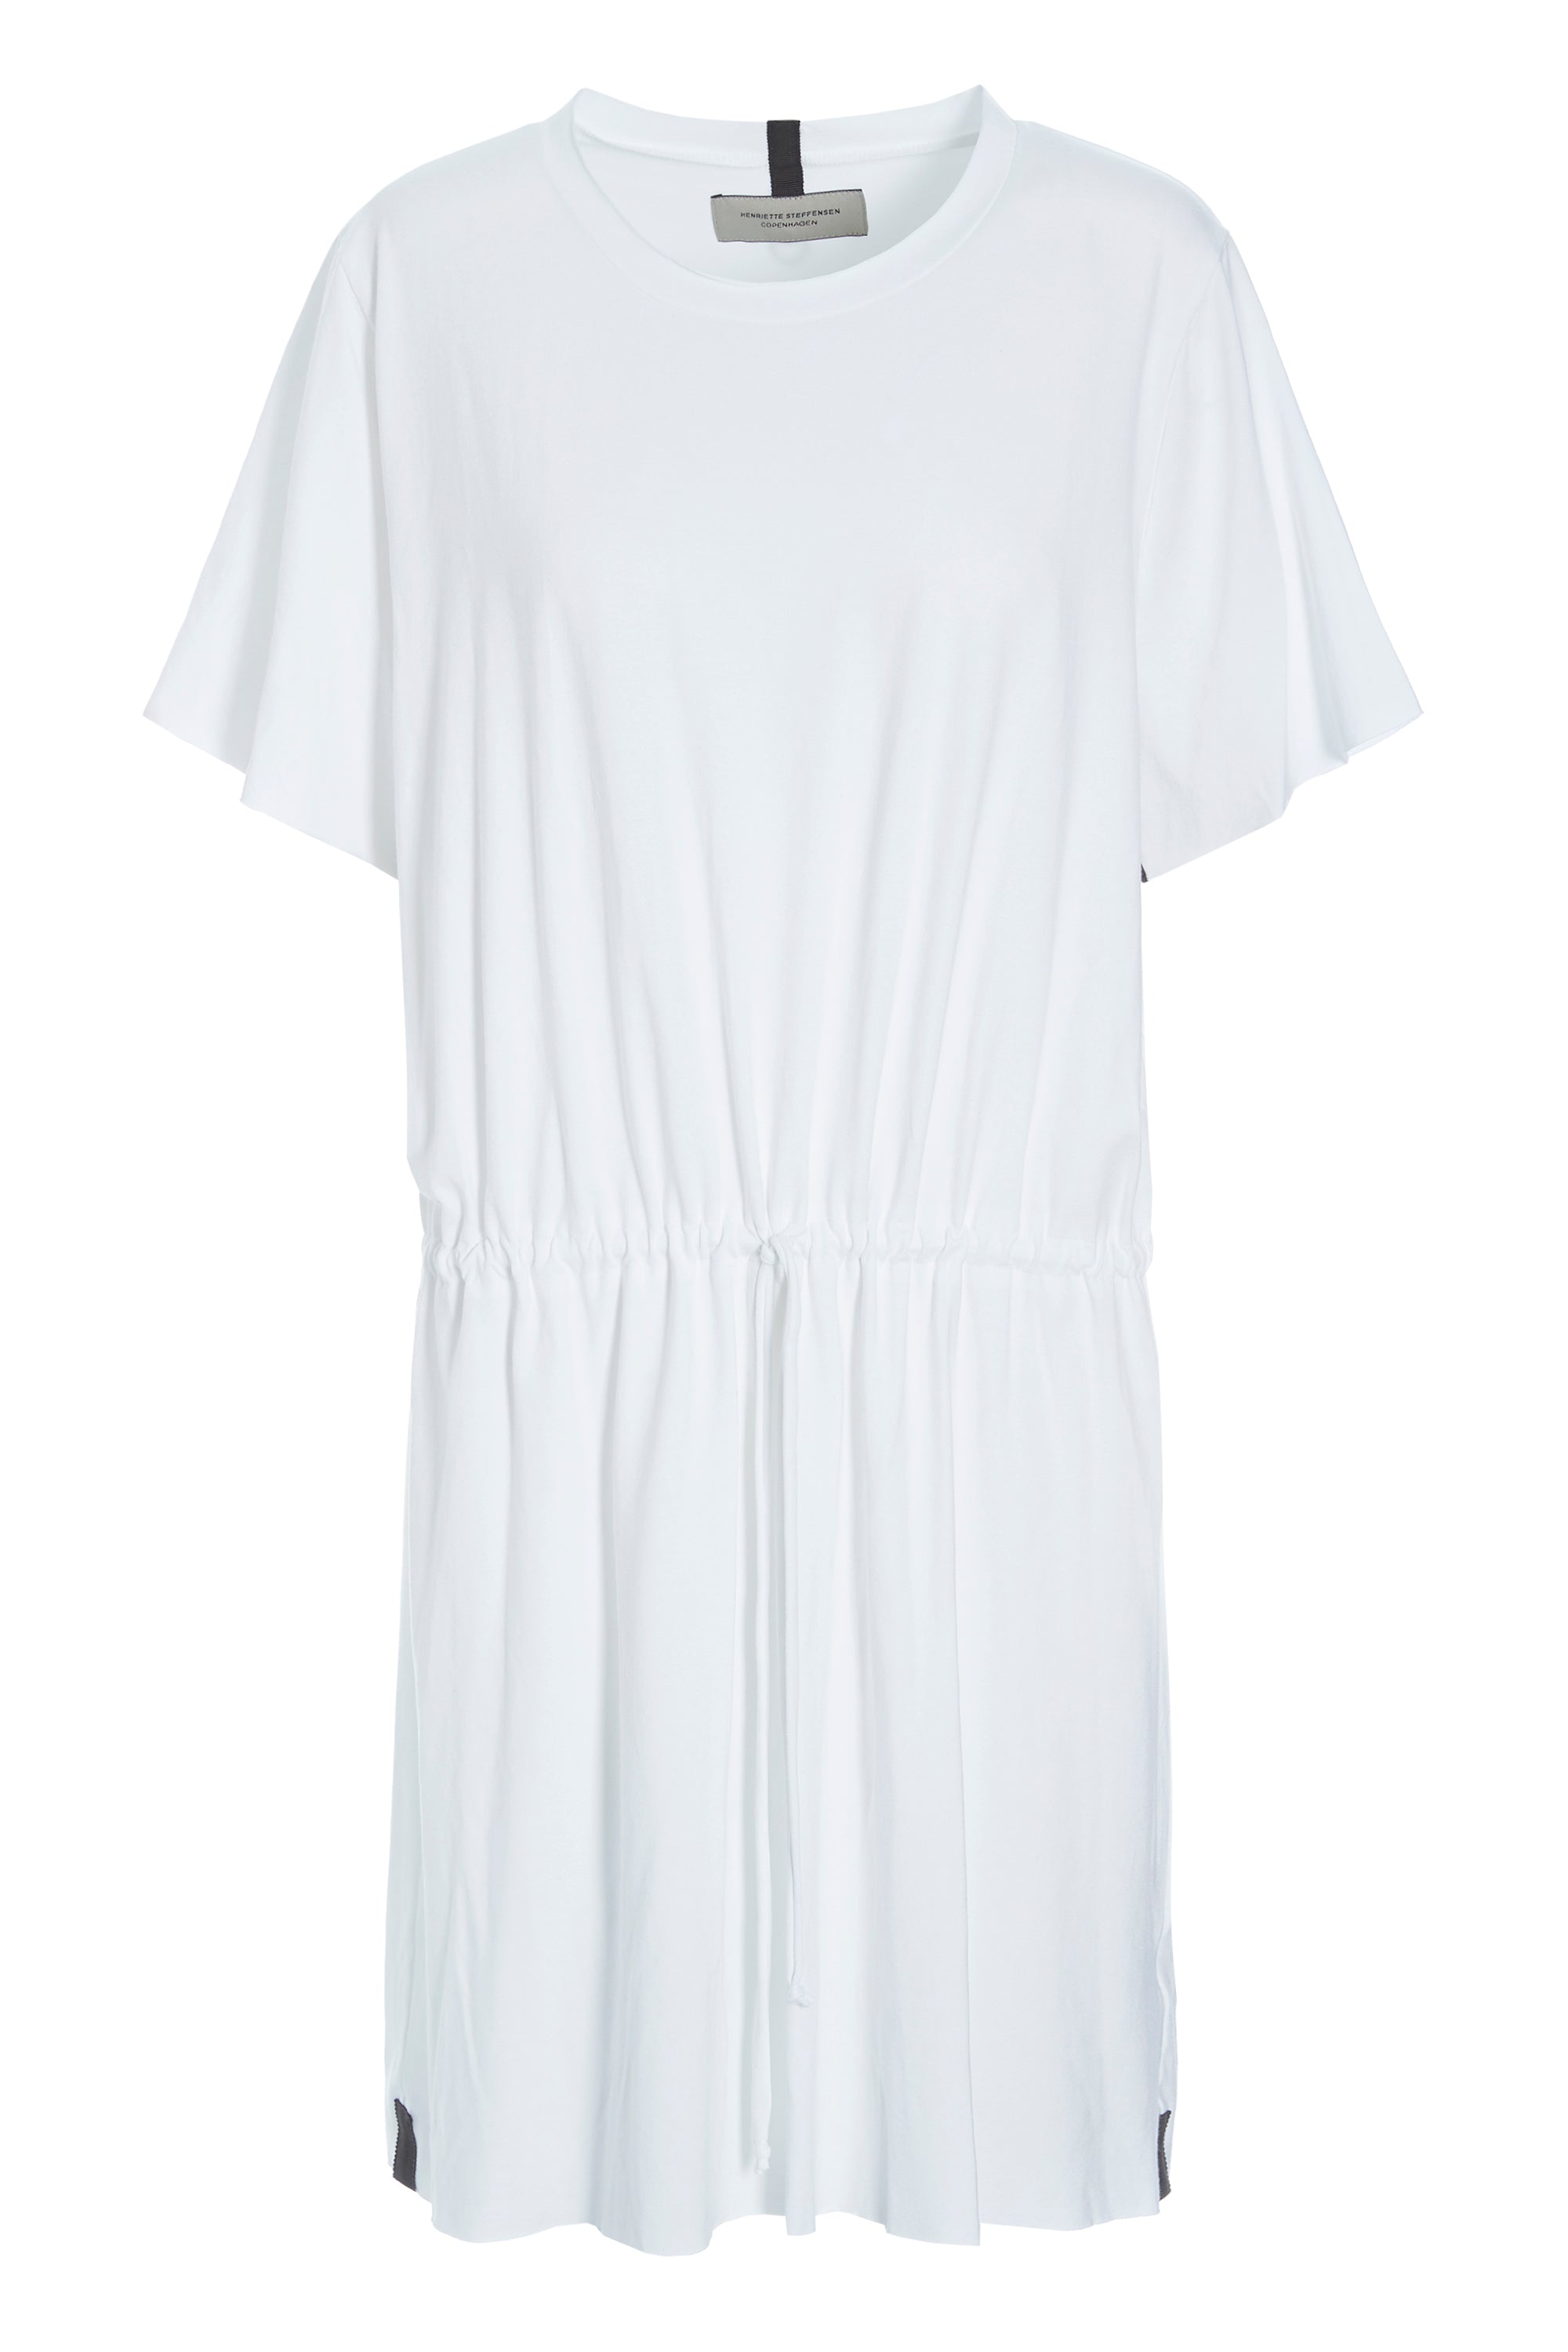 HENRIETTE STEFFENSEN COPENHAGEN Sportliches Kleid - 98036 DRESSES jersey WHITE 816